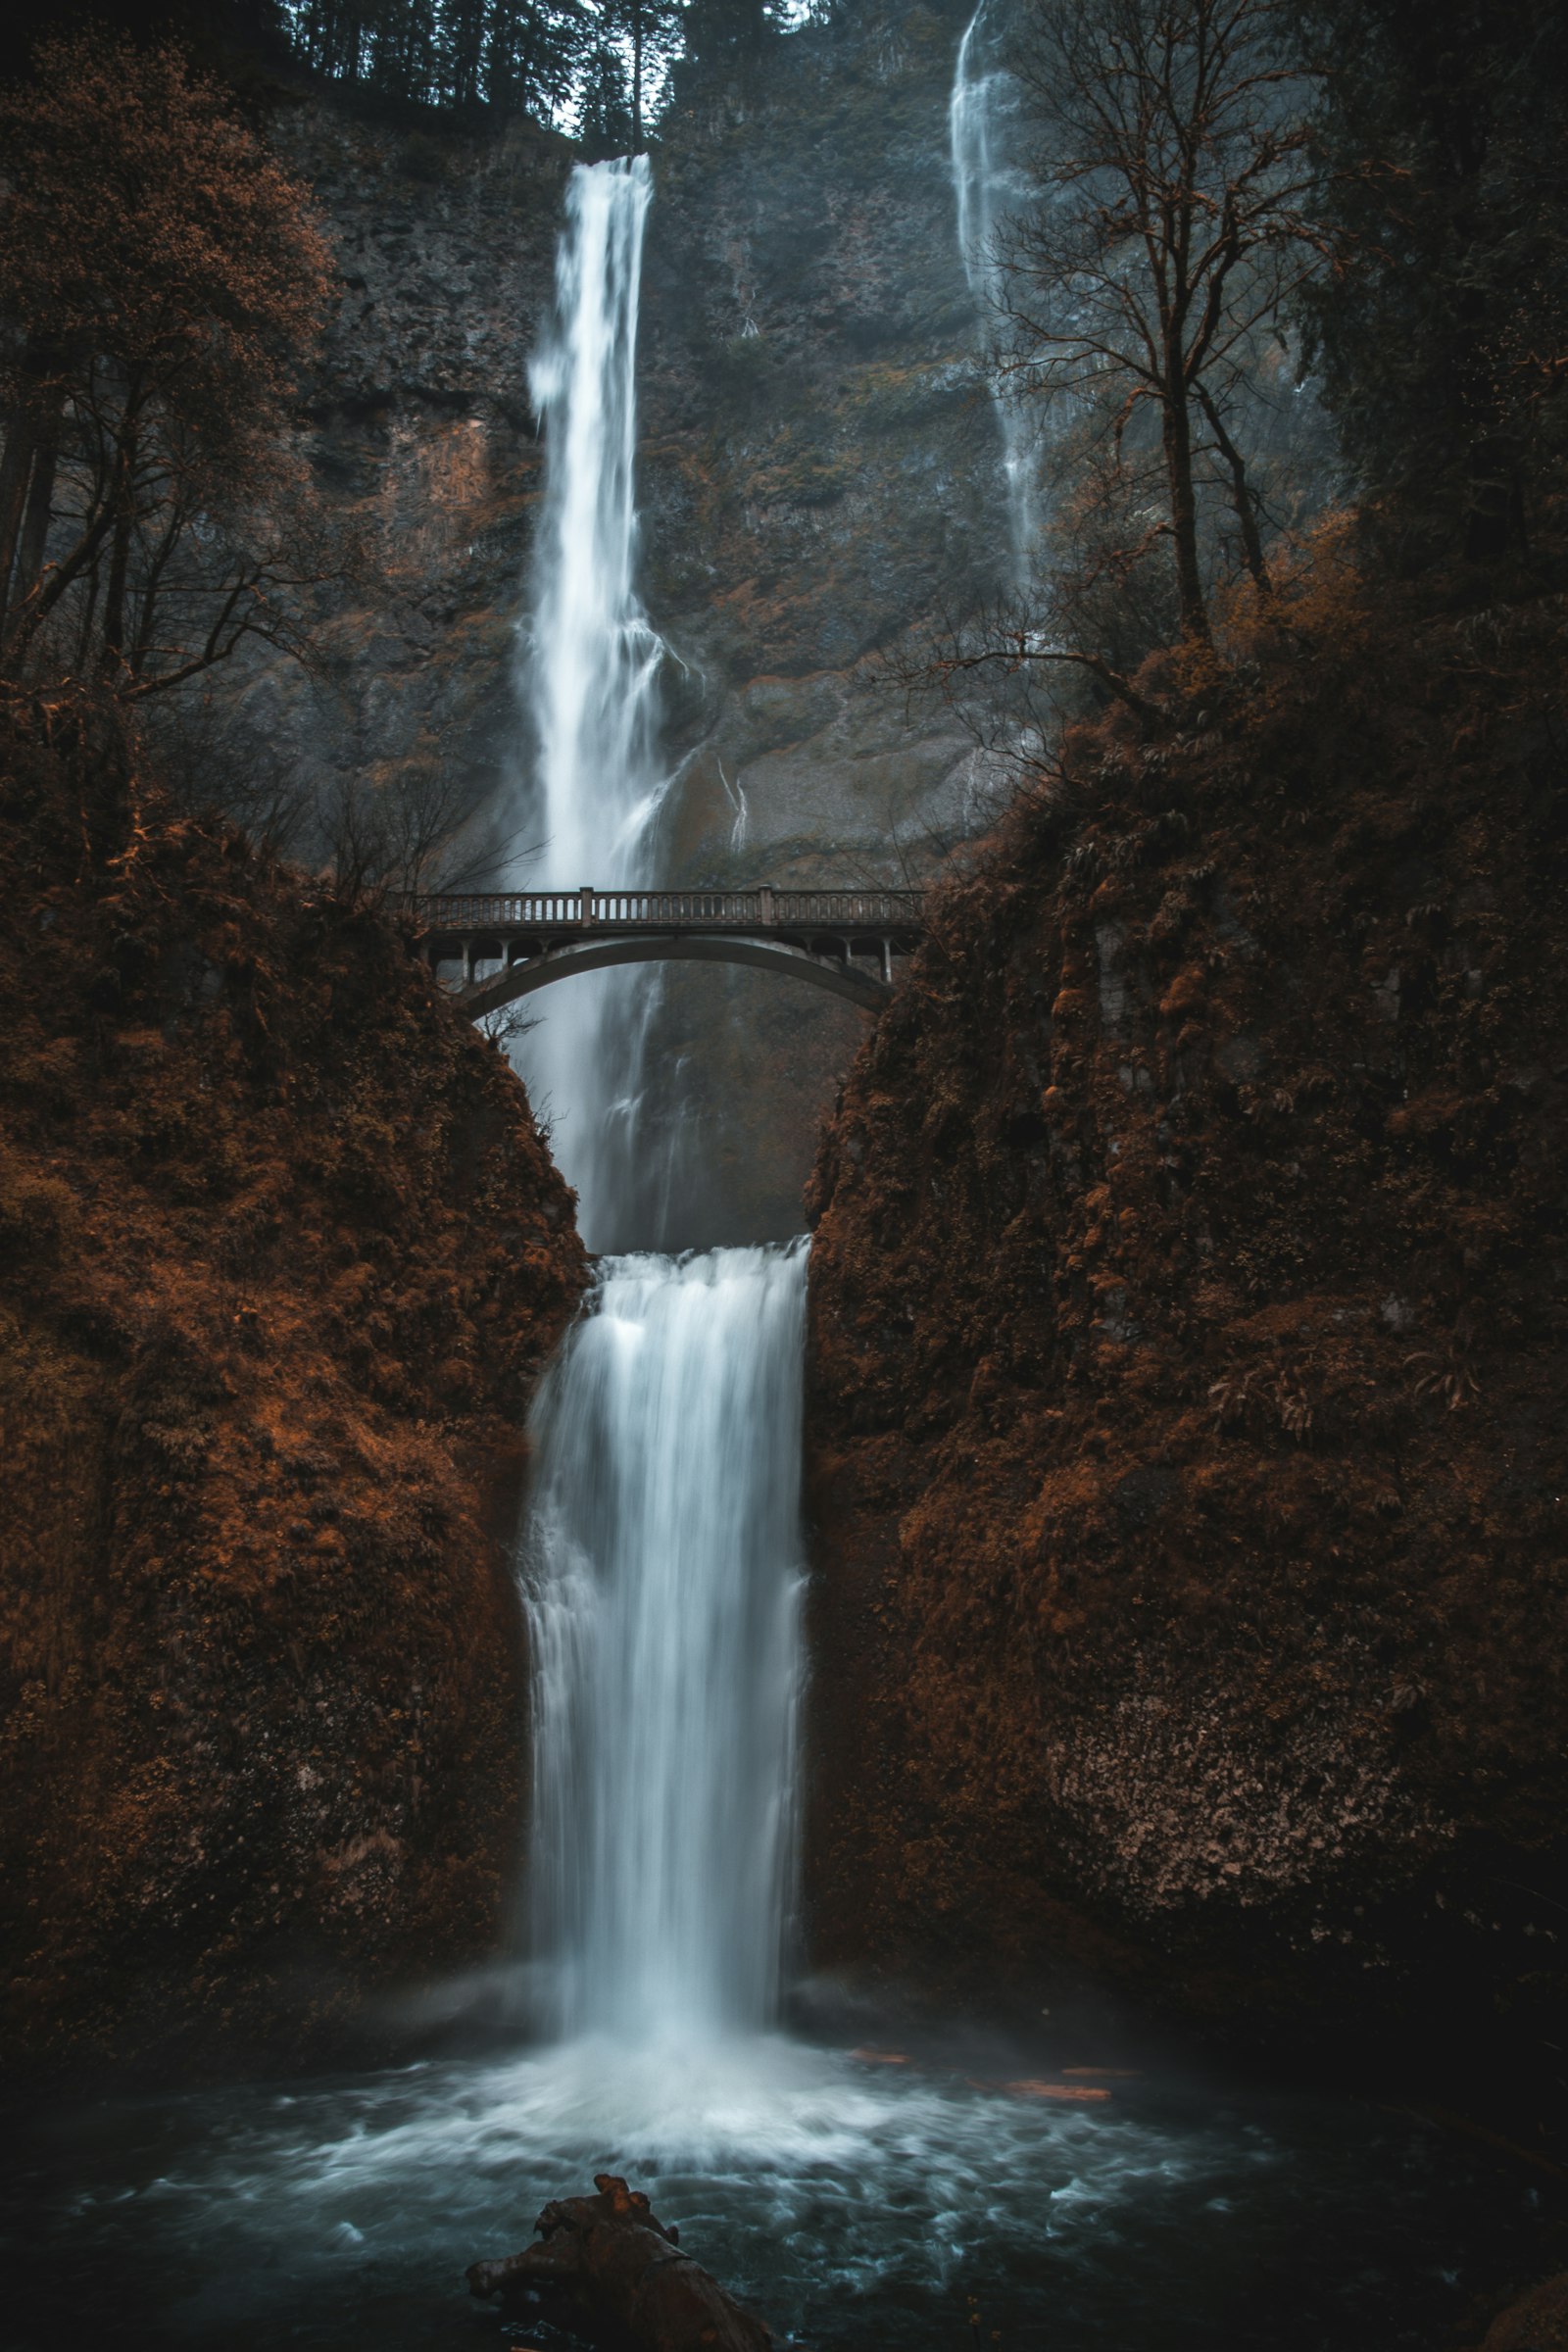 Nikon AF-S DX Nikkor 16-80mm F2.8-4E ED VR sample photo. Waterfalls under bridge during photography